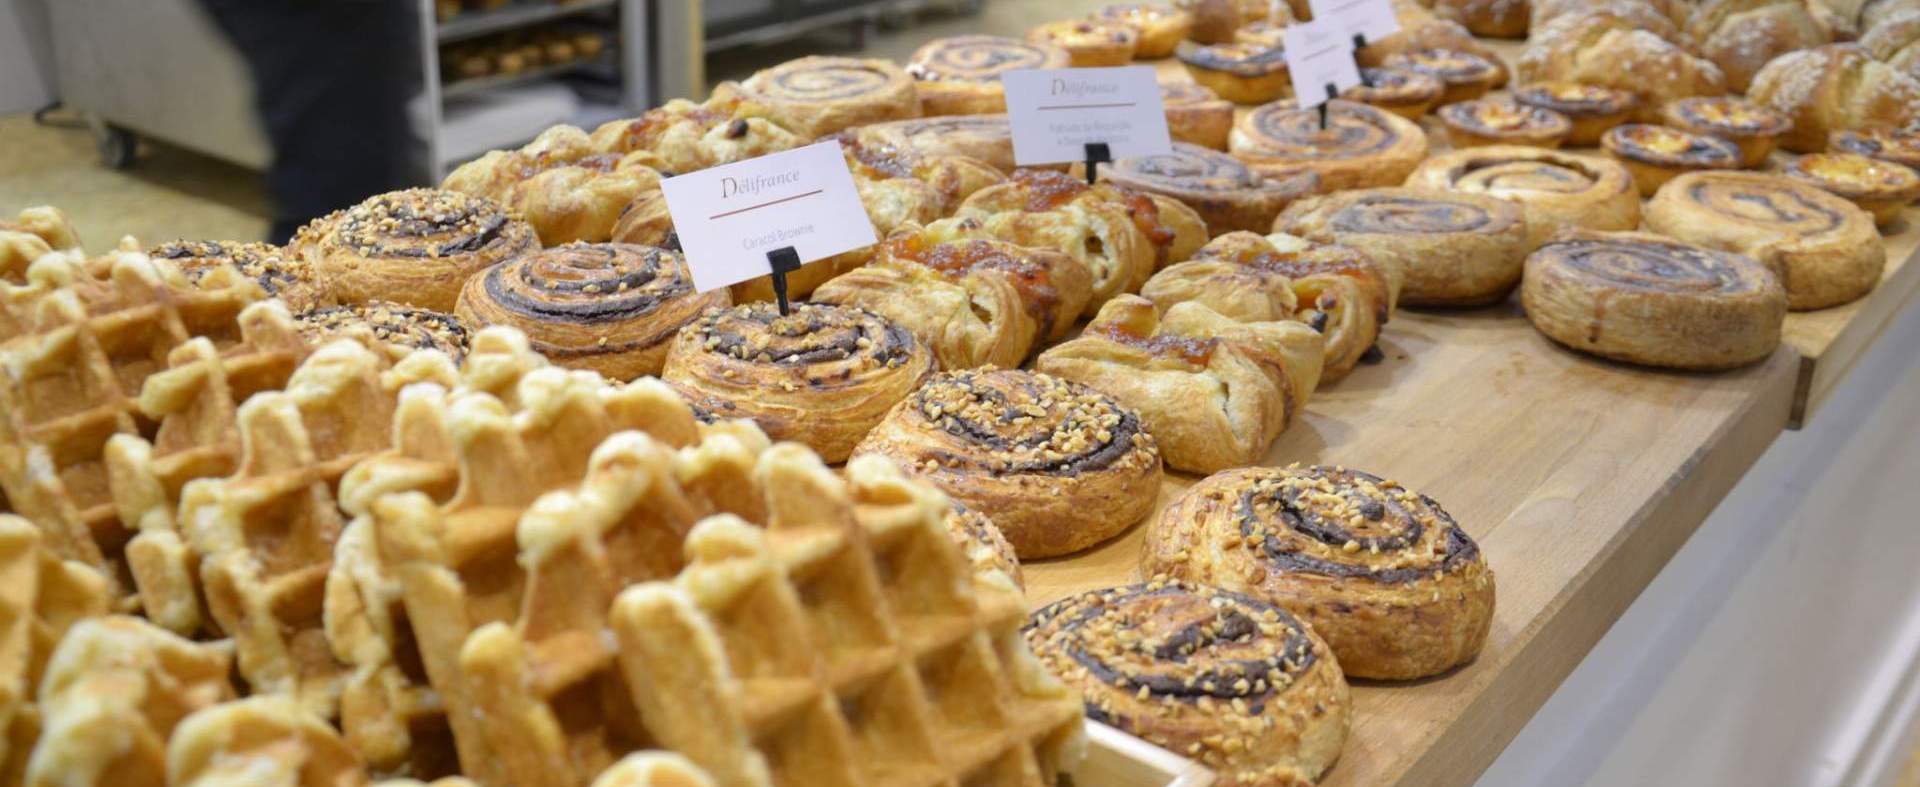 La feria de referencia de la industria de la panadería y la pastelería llega a su fin con la plena satisfacción de los expositores